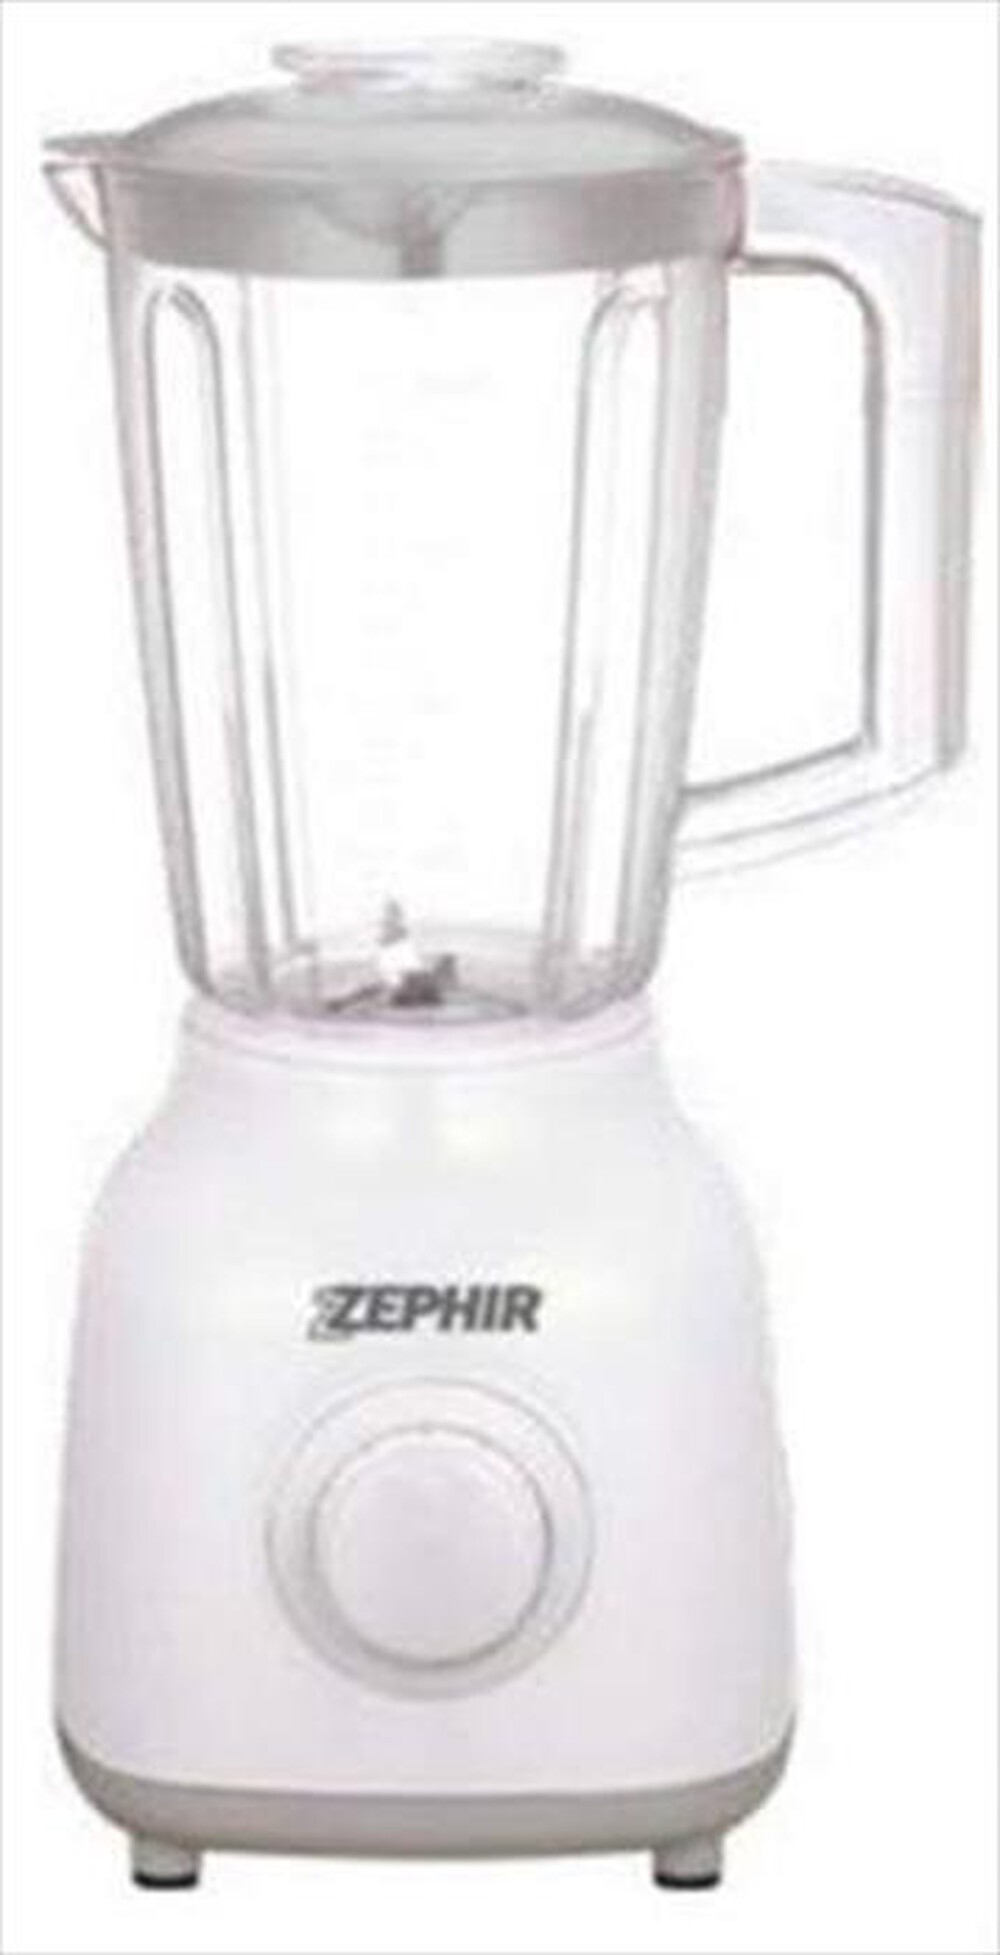 "ZEPHIR - ZHC480-Bianco"